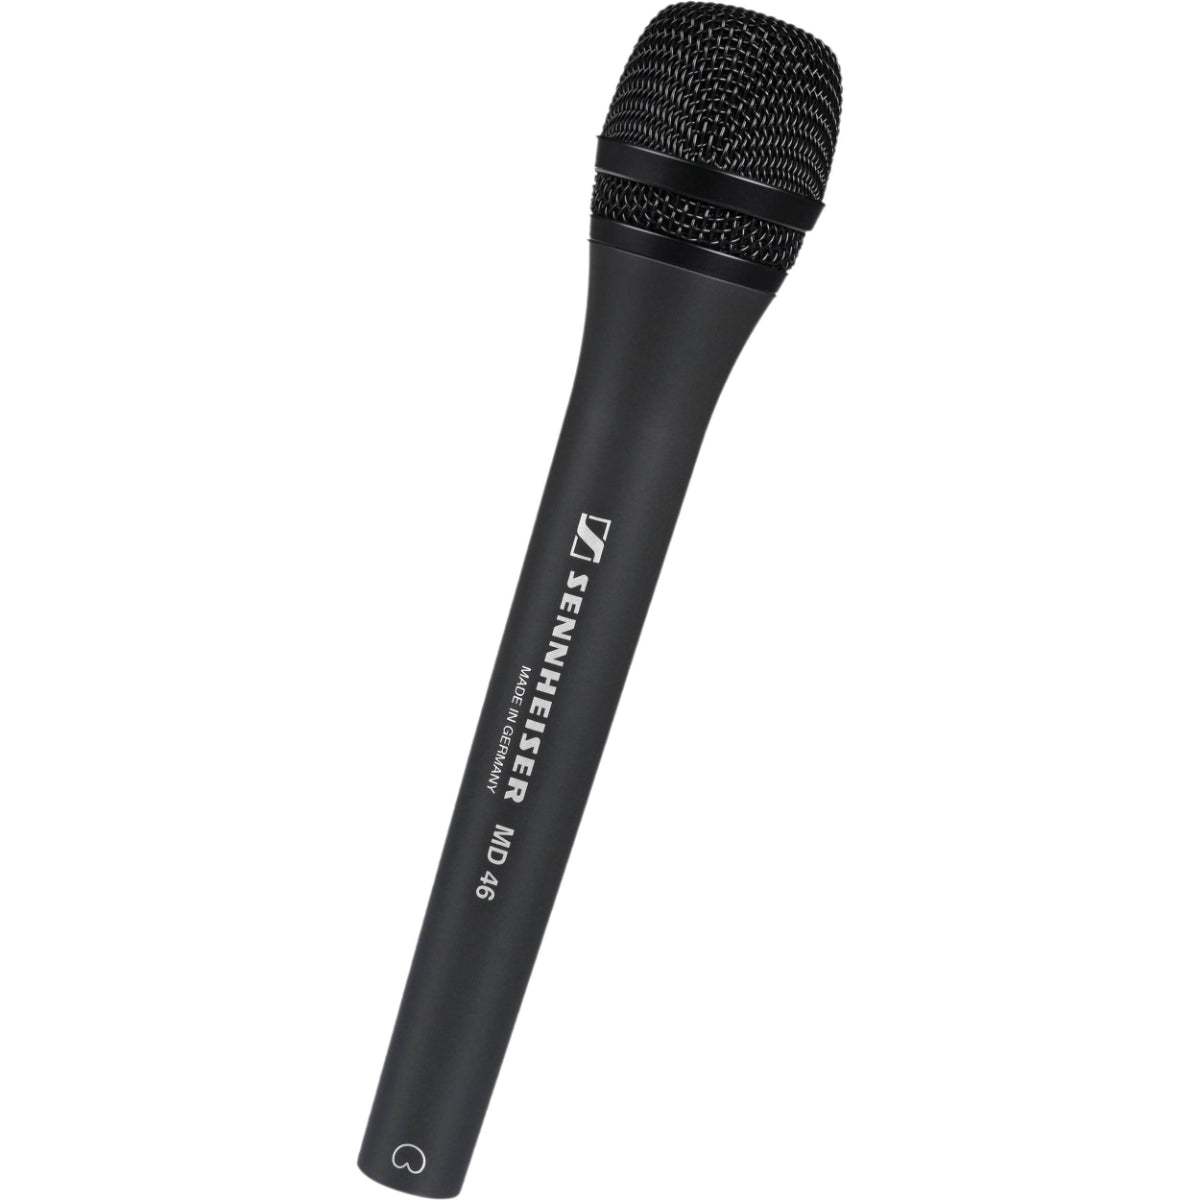 Sennheiser MD 46 Dynamic Cardioid Handheld Microphone, Low Wind/Handling Noise